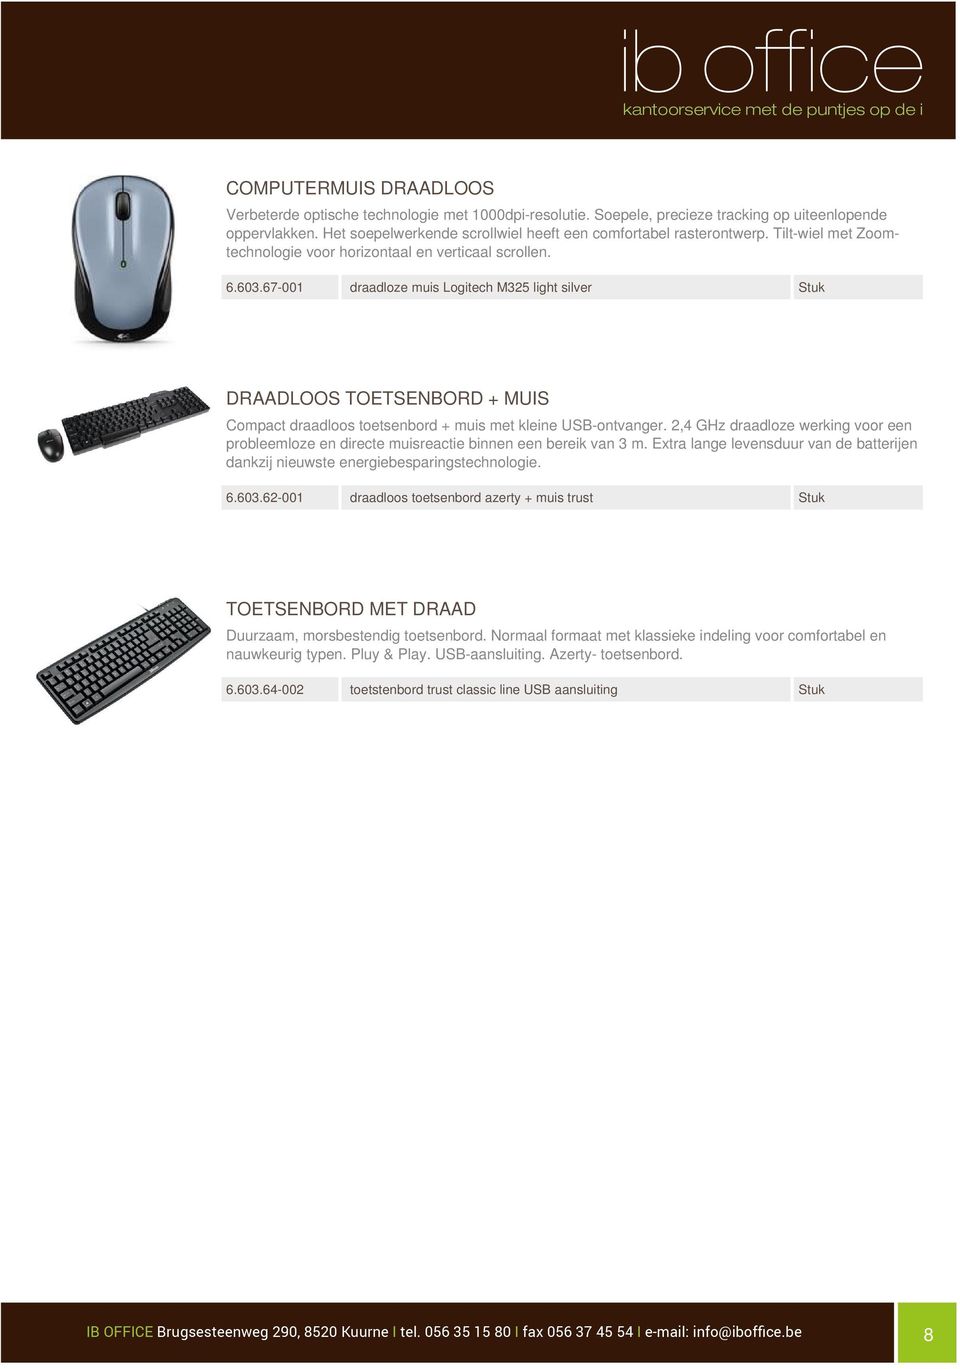 67-001 draadloze muis Logitech M325 light silver DRAADLOOS TOETSENBORD + MUIS Compact draadloos toetsenbord + muis met kleine USB-ontvanger.